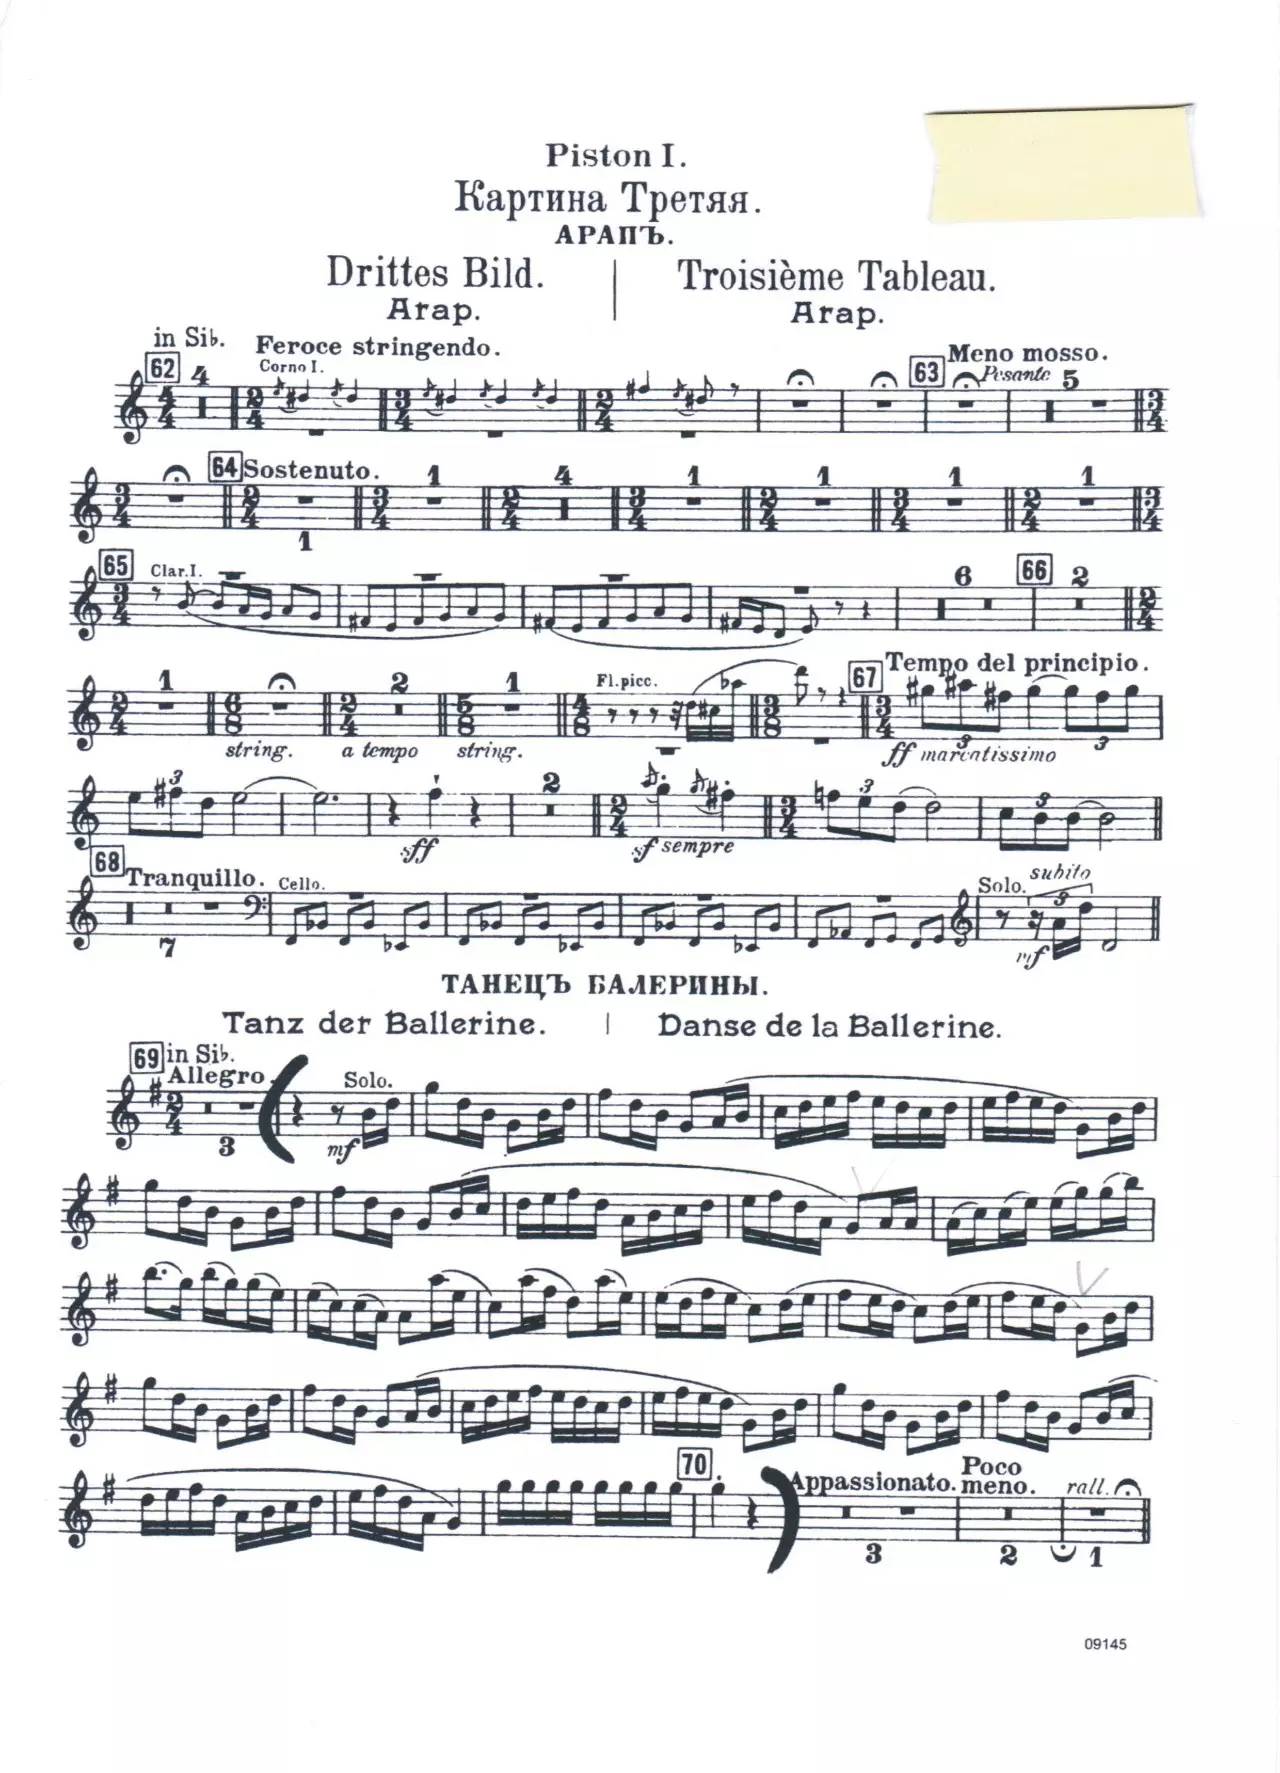 唐璜勃1,罗西尼:丝质的梯子贝7,普1双簧管门(仲夏夜)柴5勃4贝7单簧管